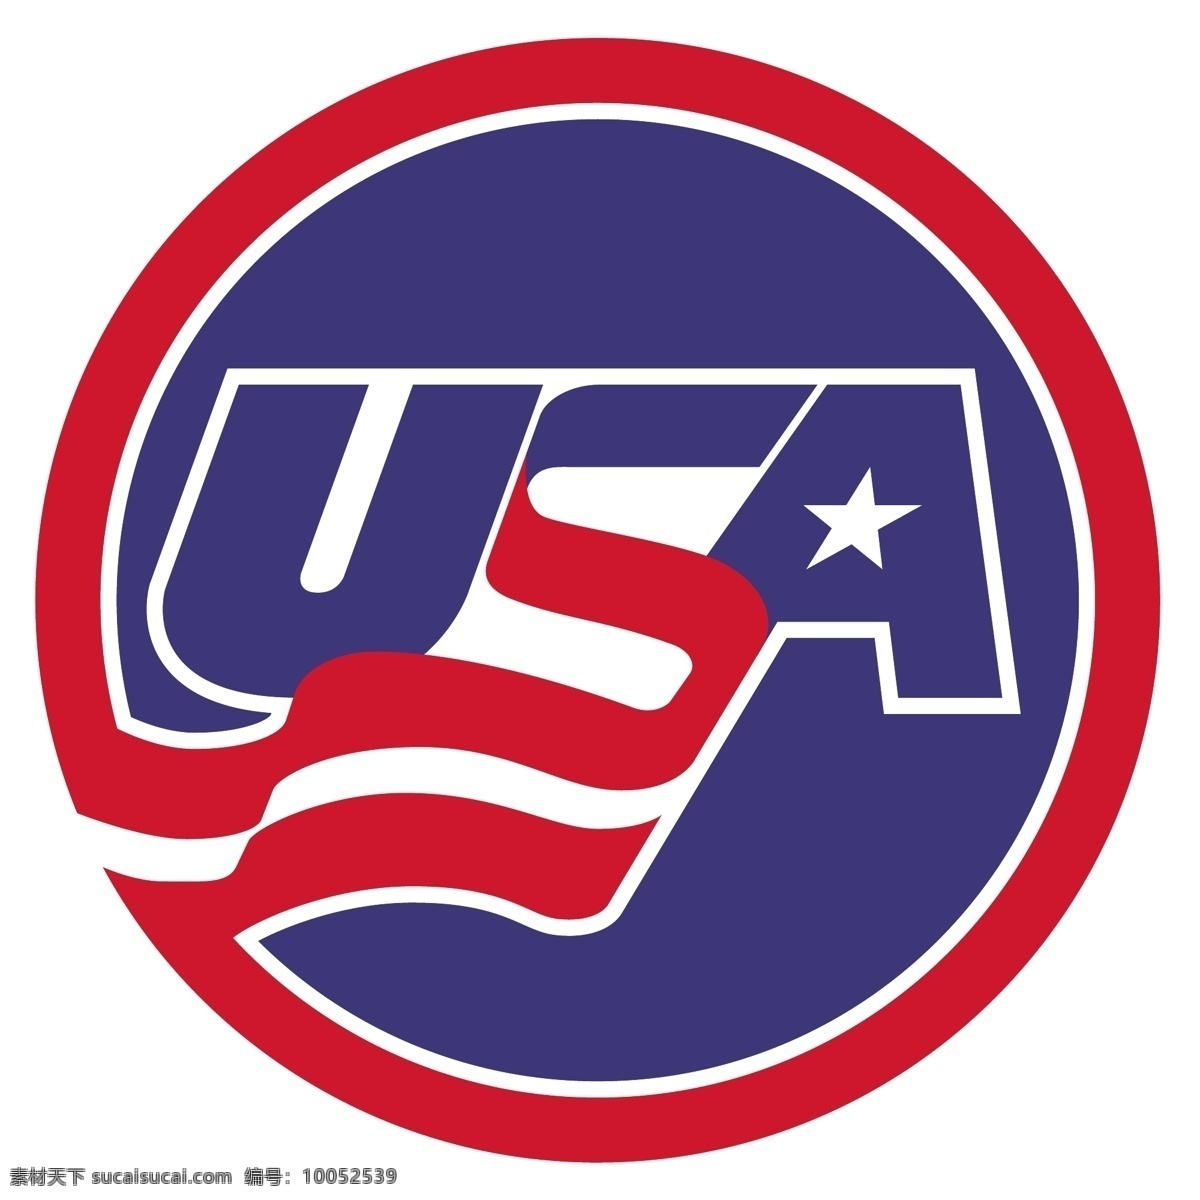 美国 曲棍球 矢量标志下载 免费矢量标识 商标 品牌标识 标识 矢量 免费 品牌 公司 白色